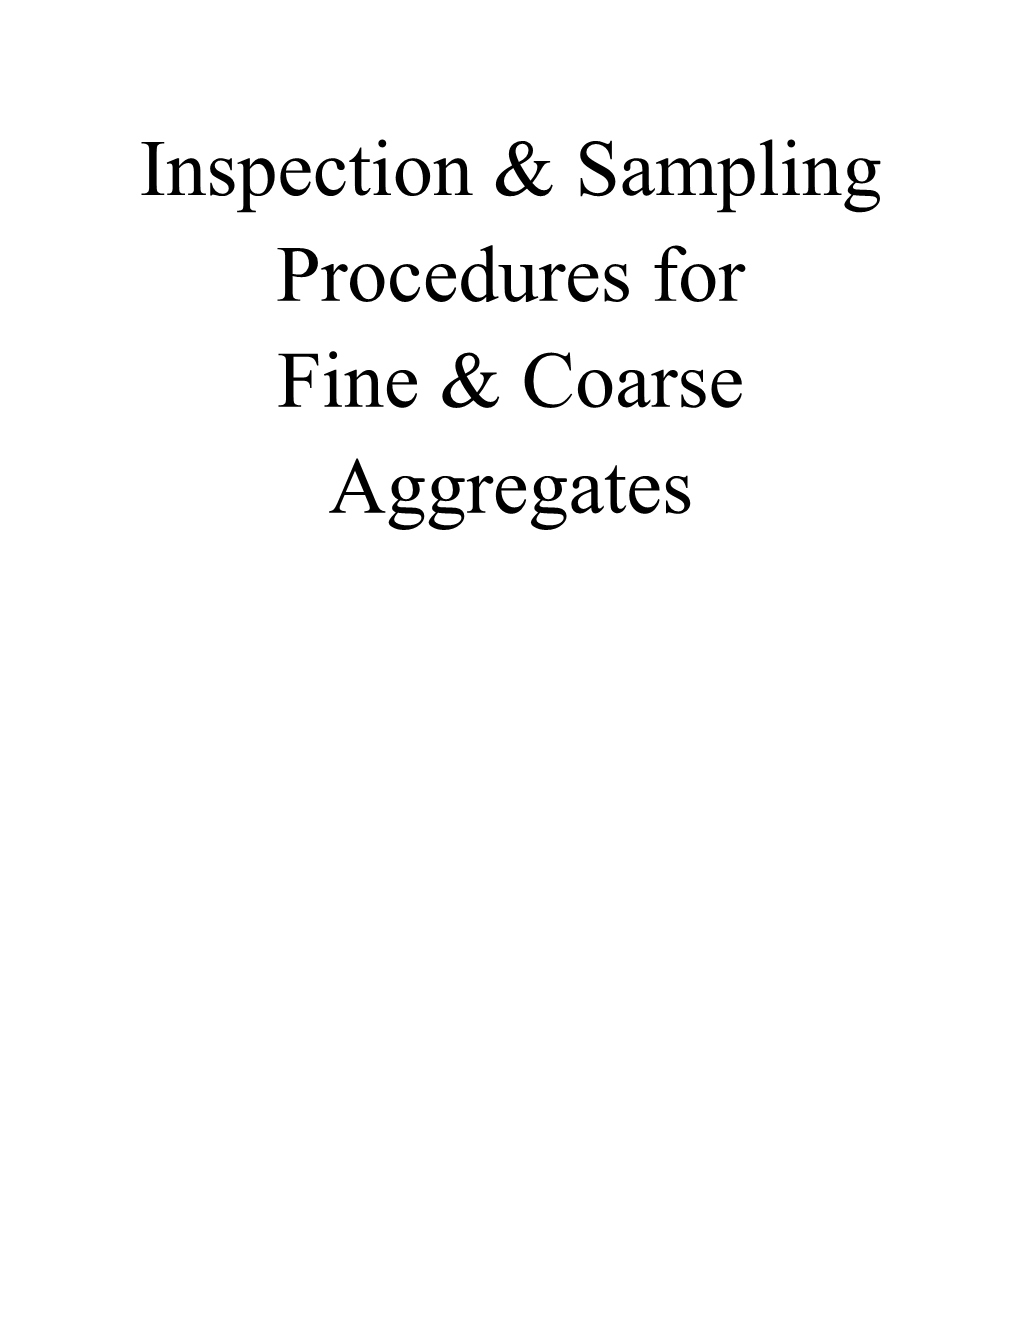 Inspection & Sampling Procedures for Fine & Coarse Aggregates